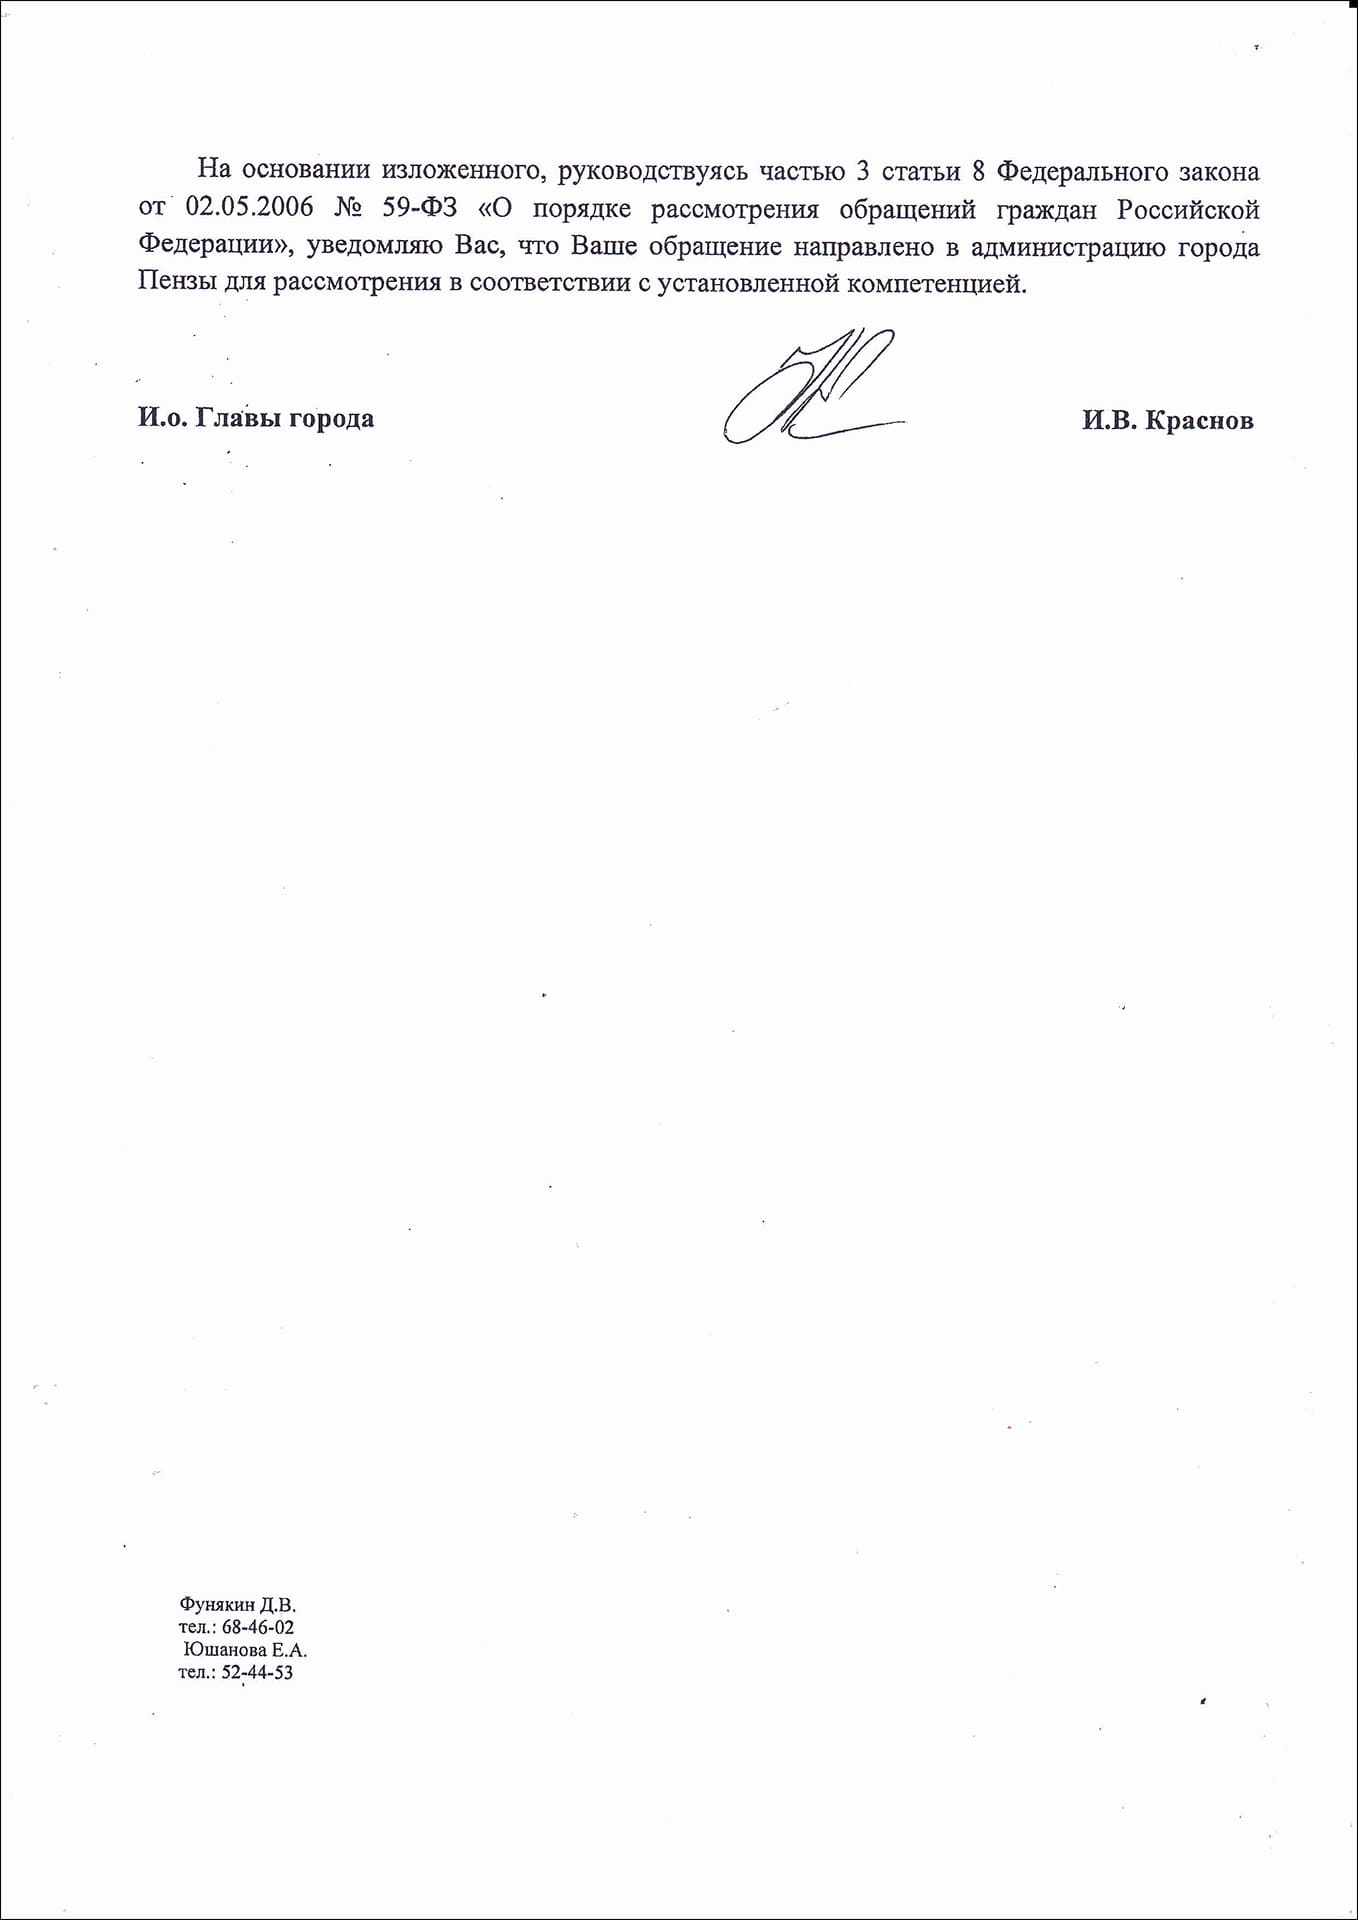 Глава города Владимир Мутовкин ответил на обращение отпиской